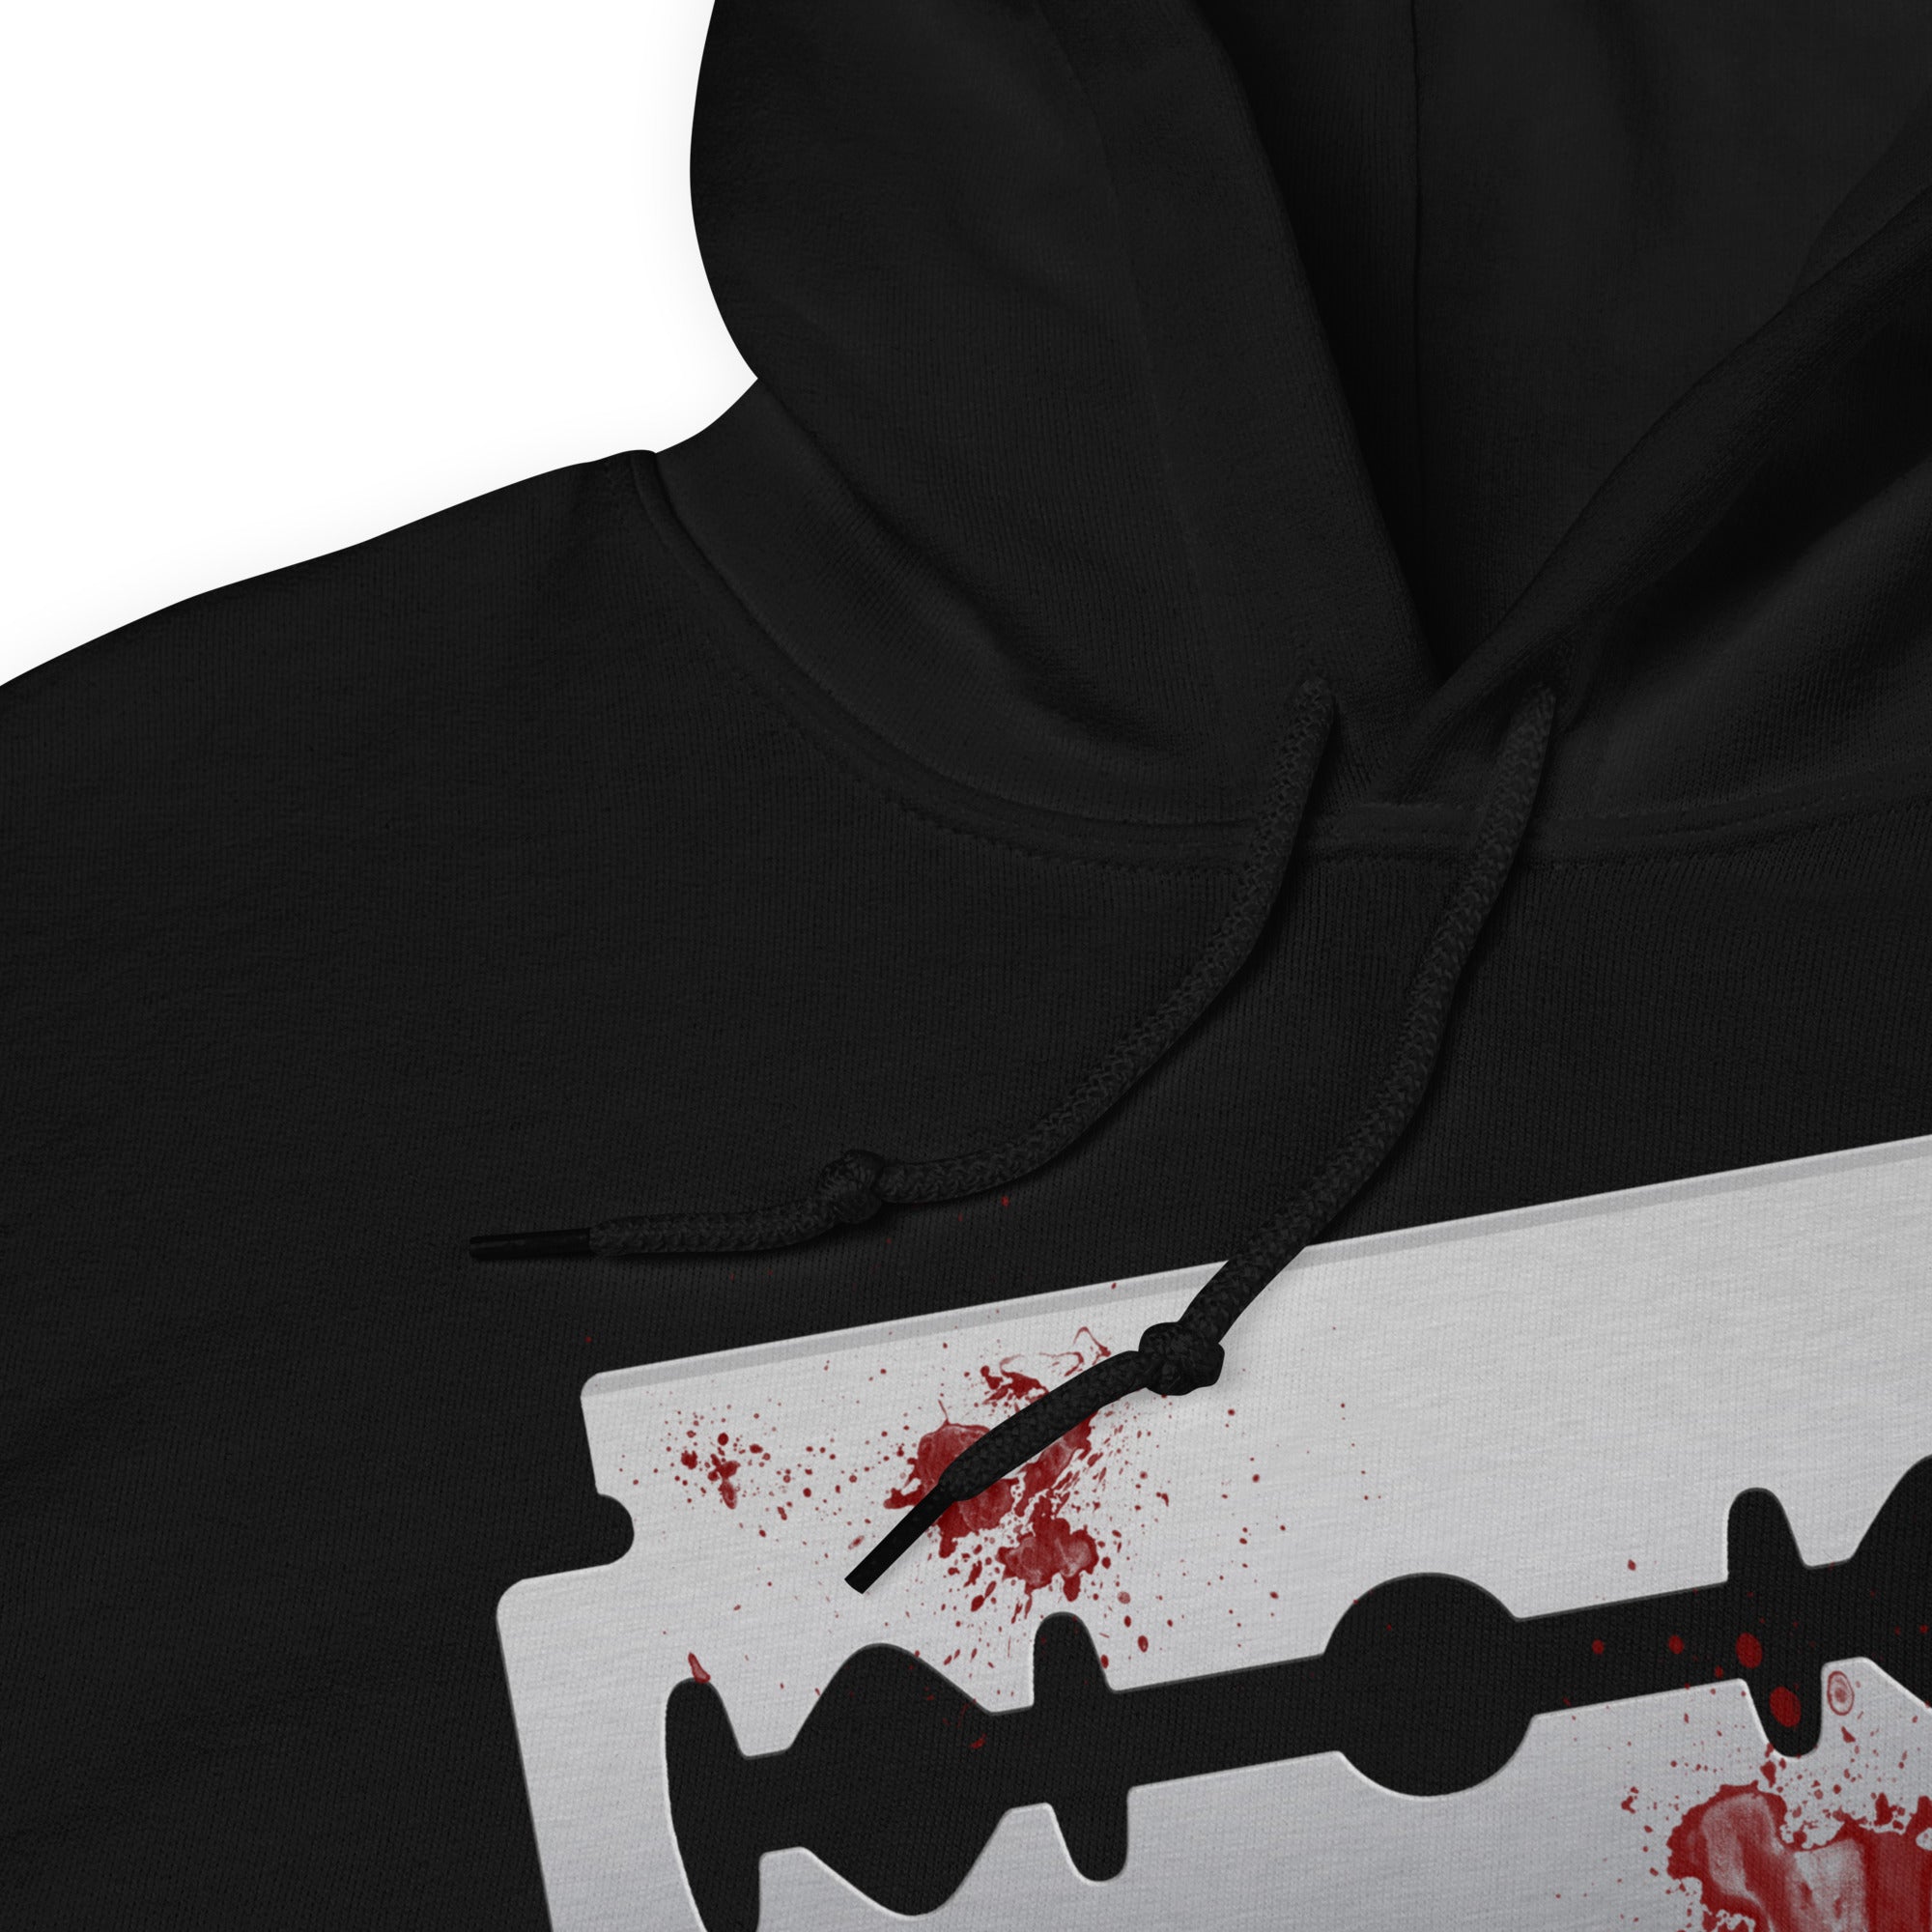 Blood Violin Bloody Razor Blade Horror Unisex Hoodie Sweatshirt - Edge of Life Designs